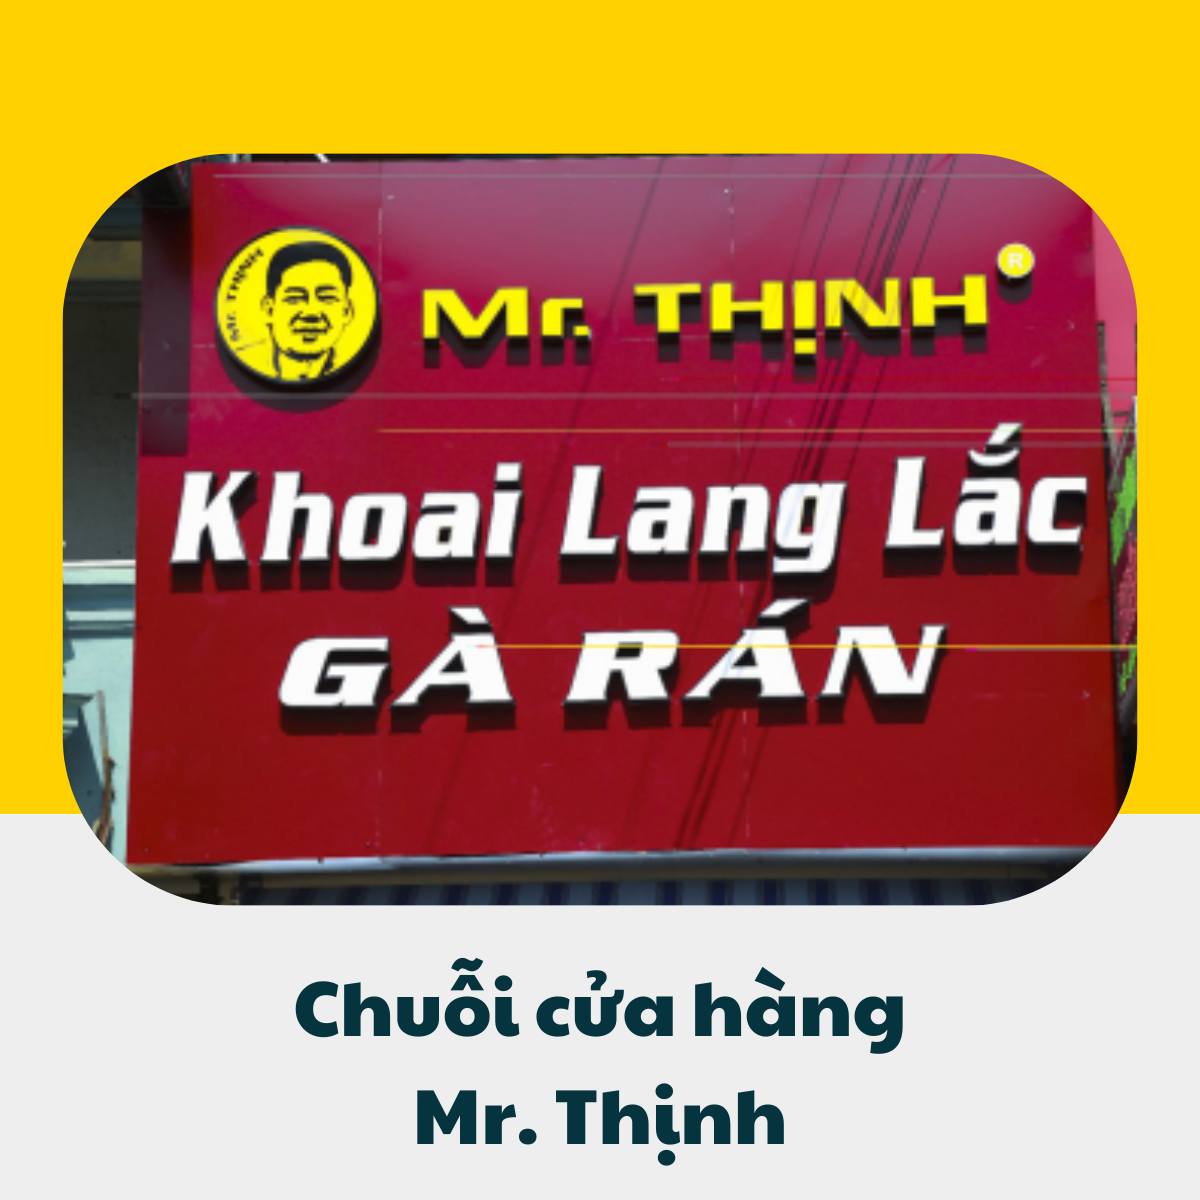 Chuỗi cửa hàng Mr Thịnh